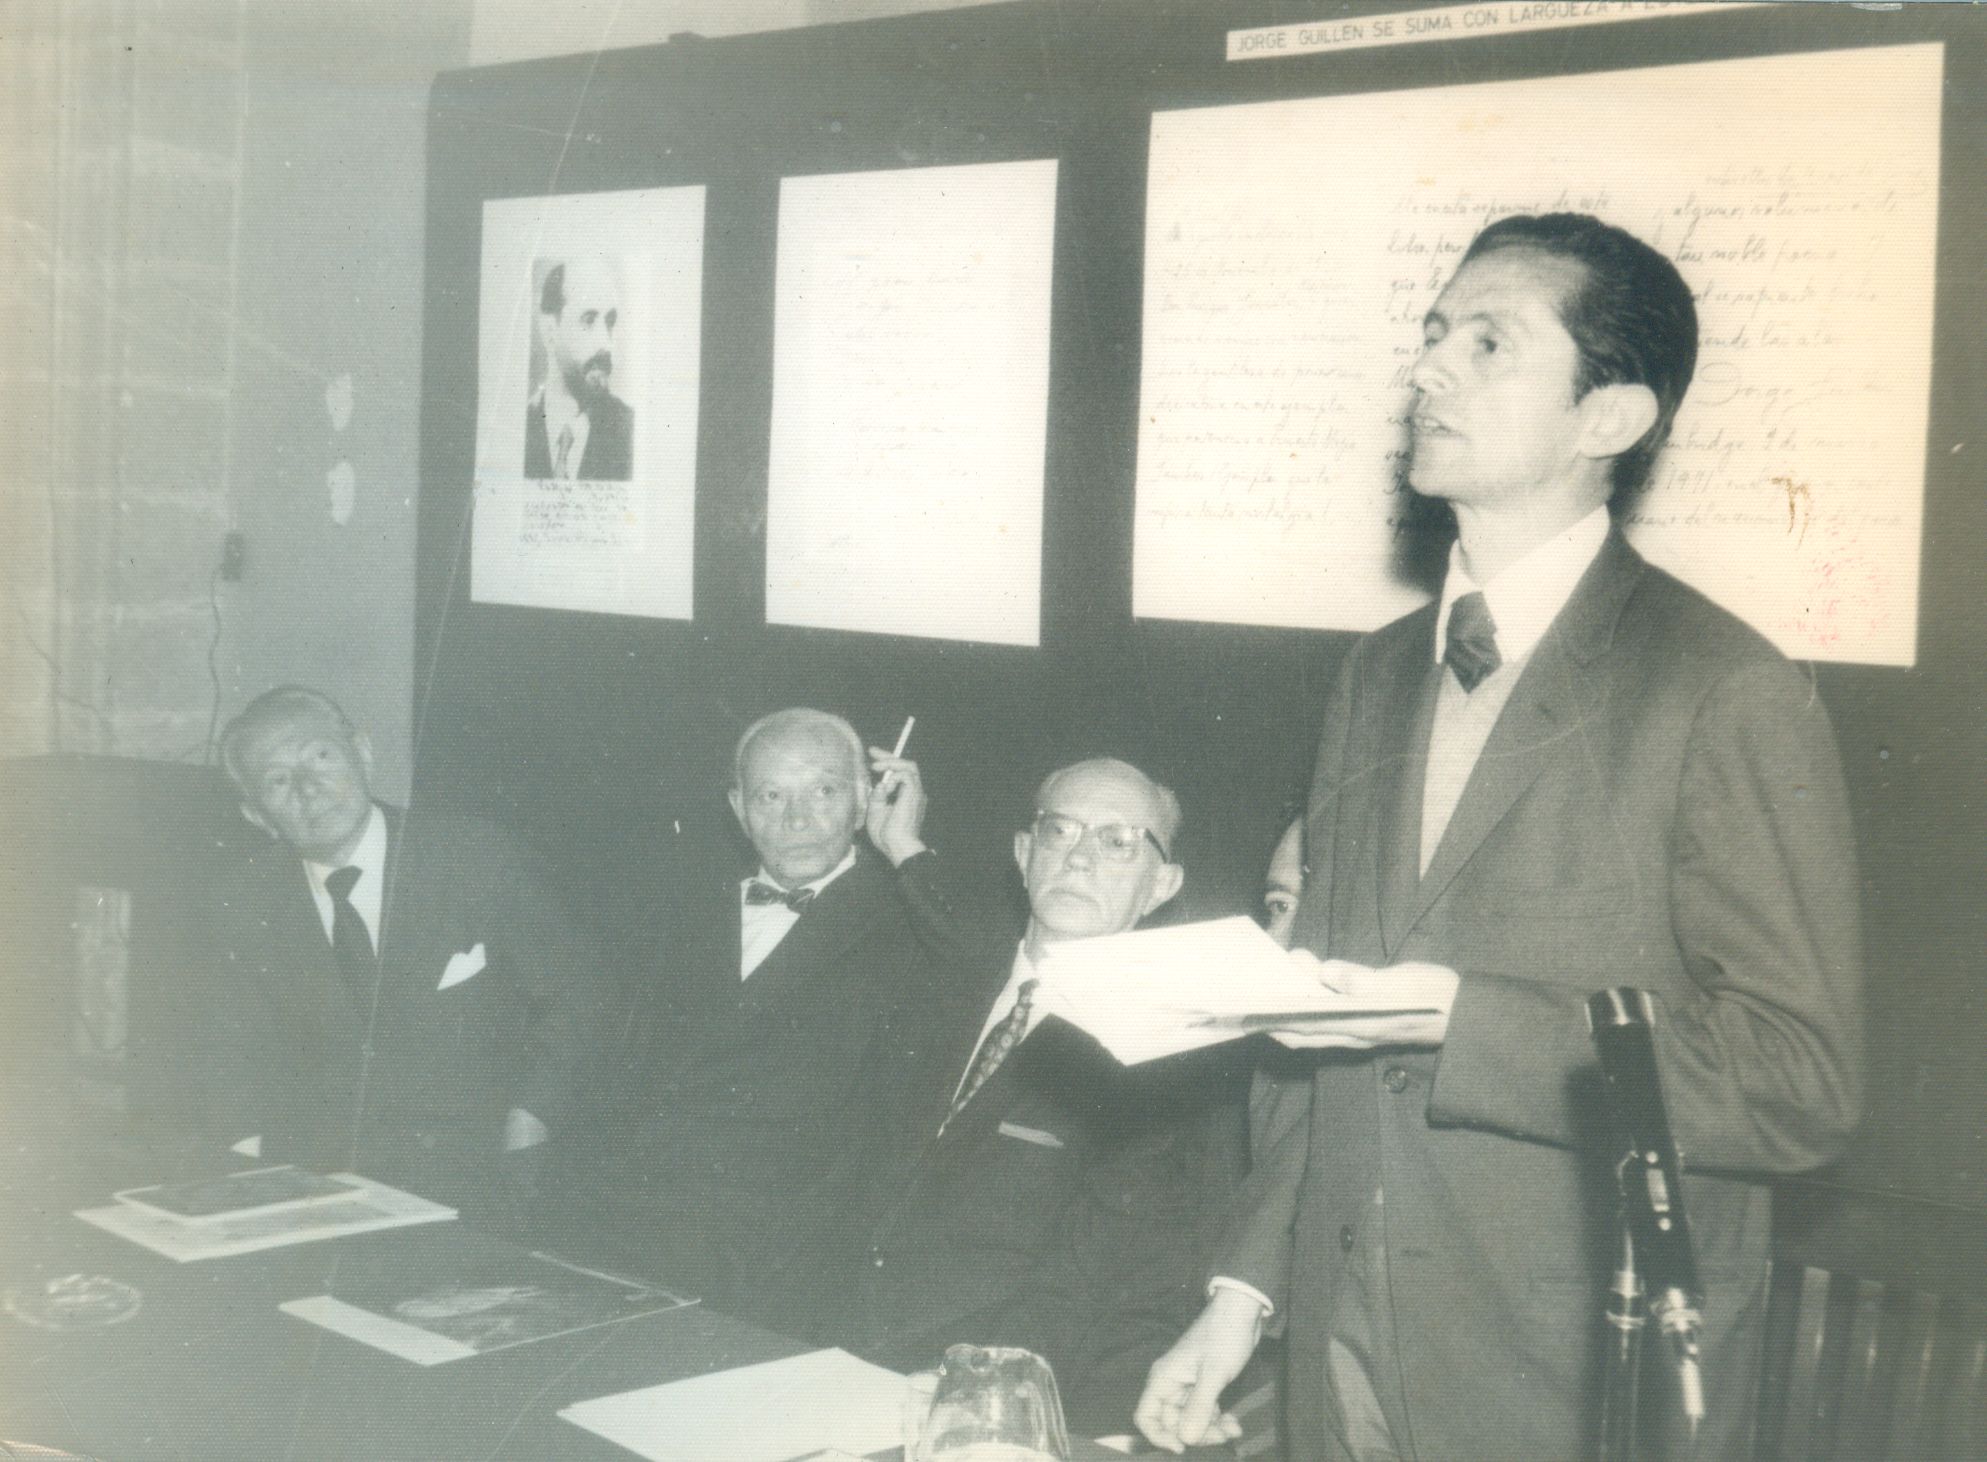 Hector González Rojo, Antonio Castro Leal y Francisco Monterde oyendo a Enrique una lectura de poema